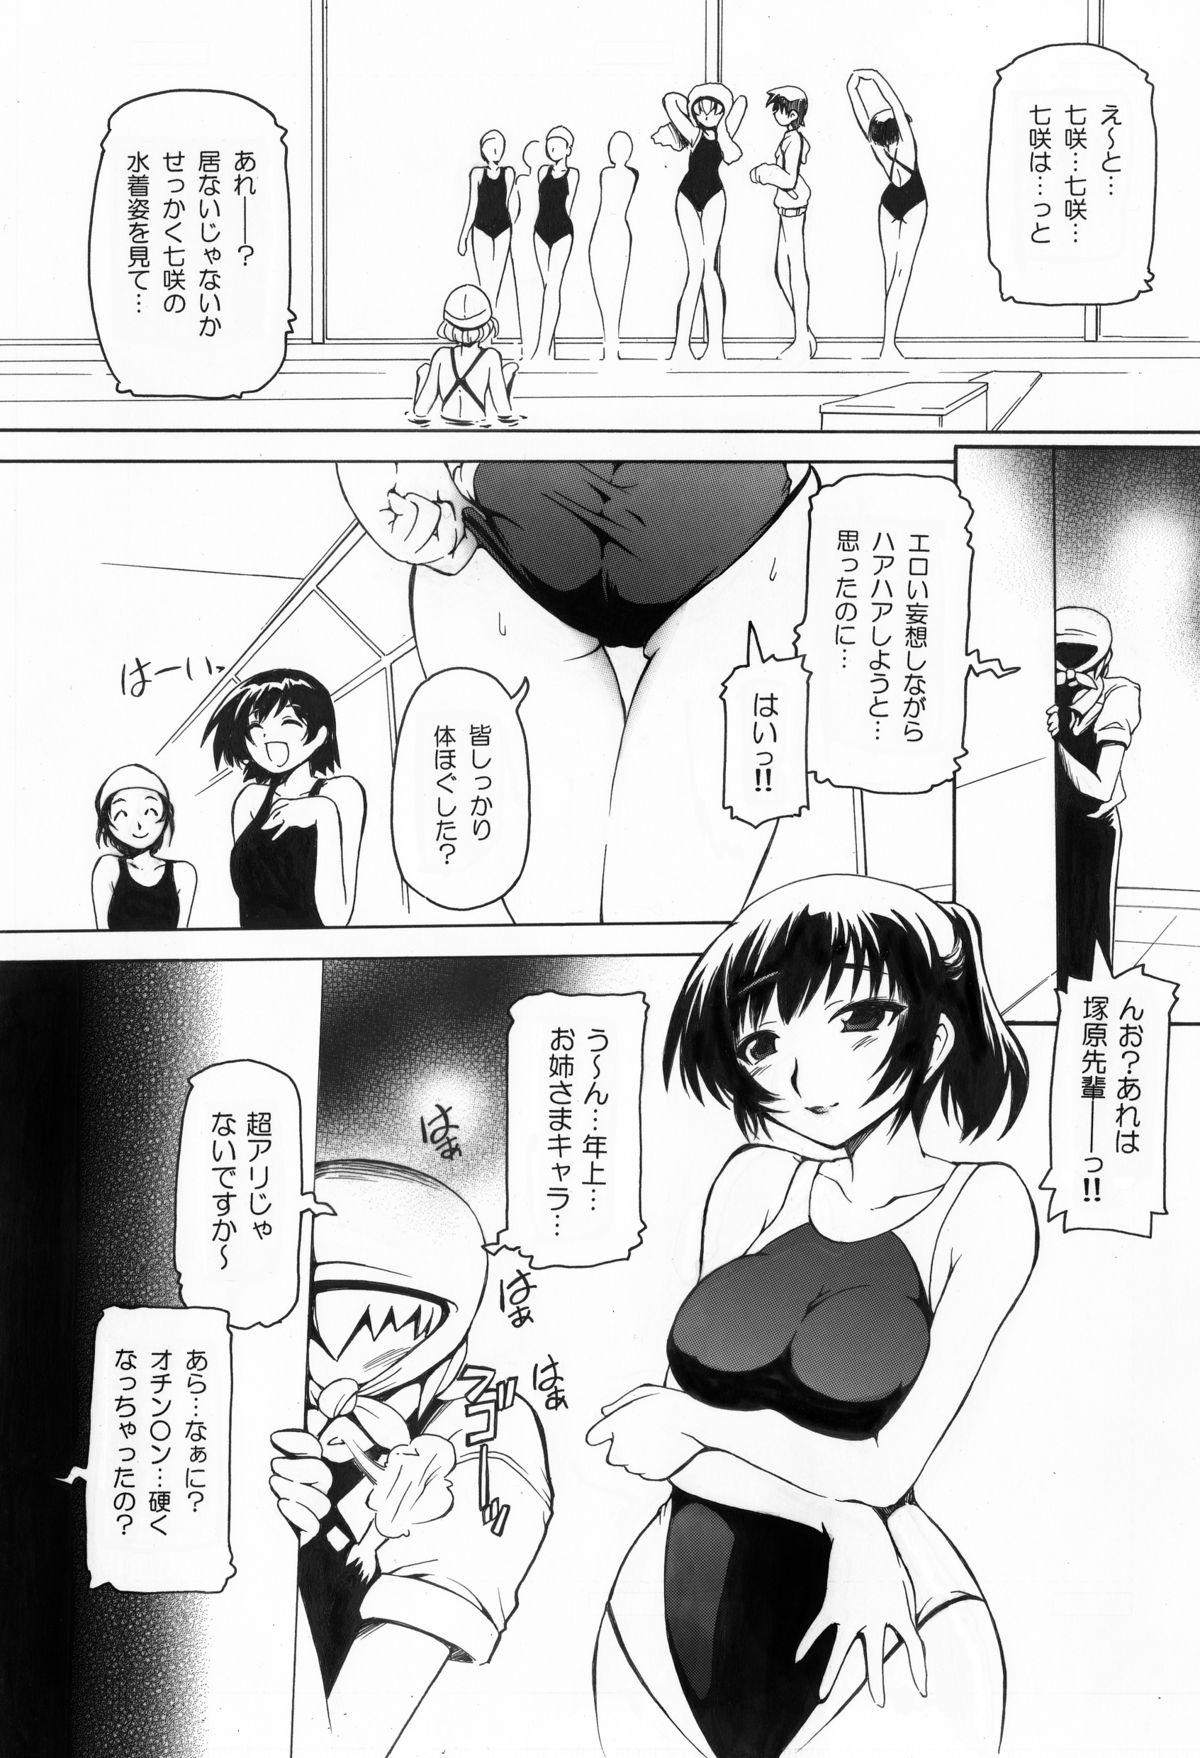 Stroking Amagami Nanasaki Ero Manga - Amagami Blowjob - Page 2